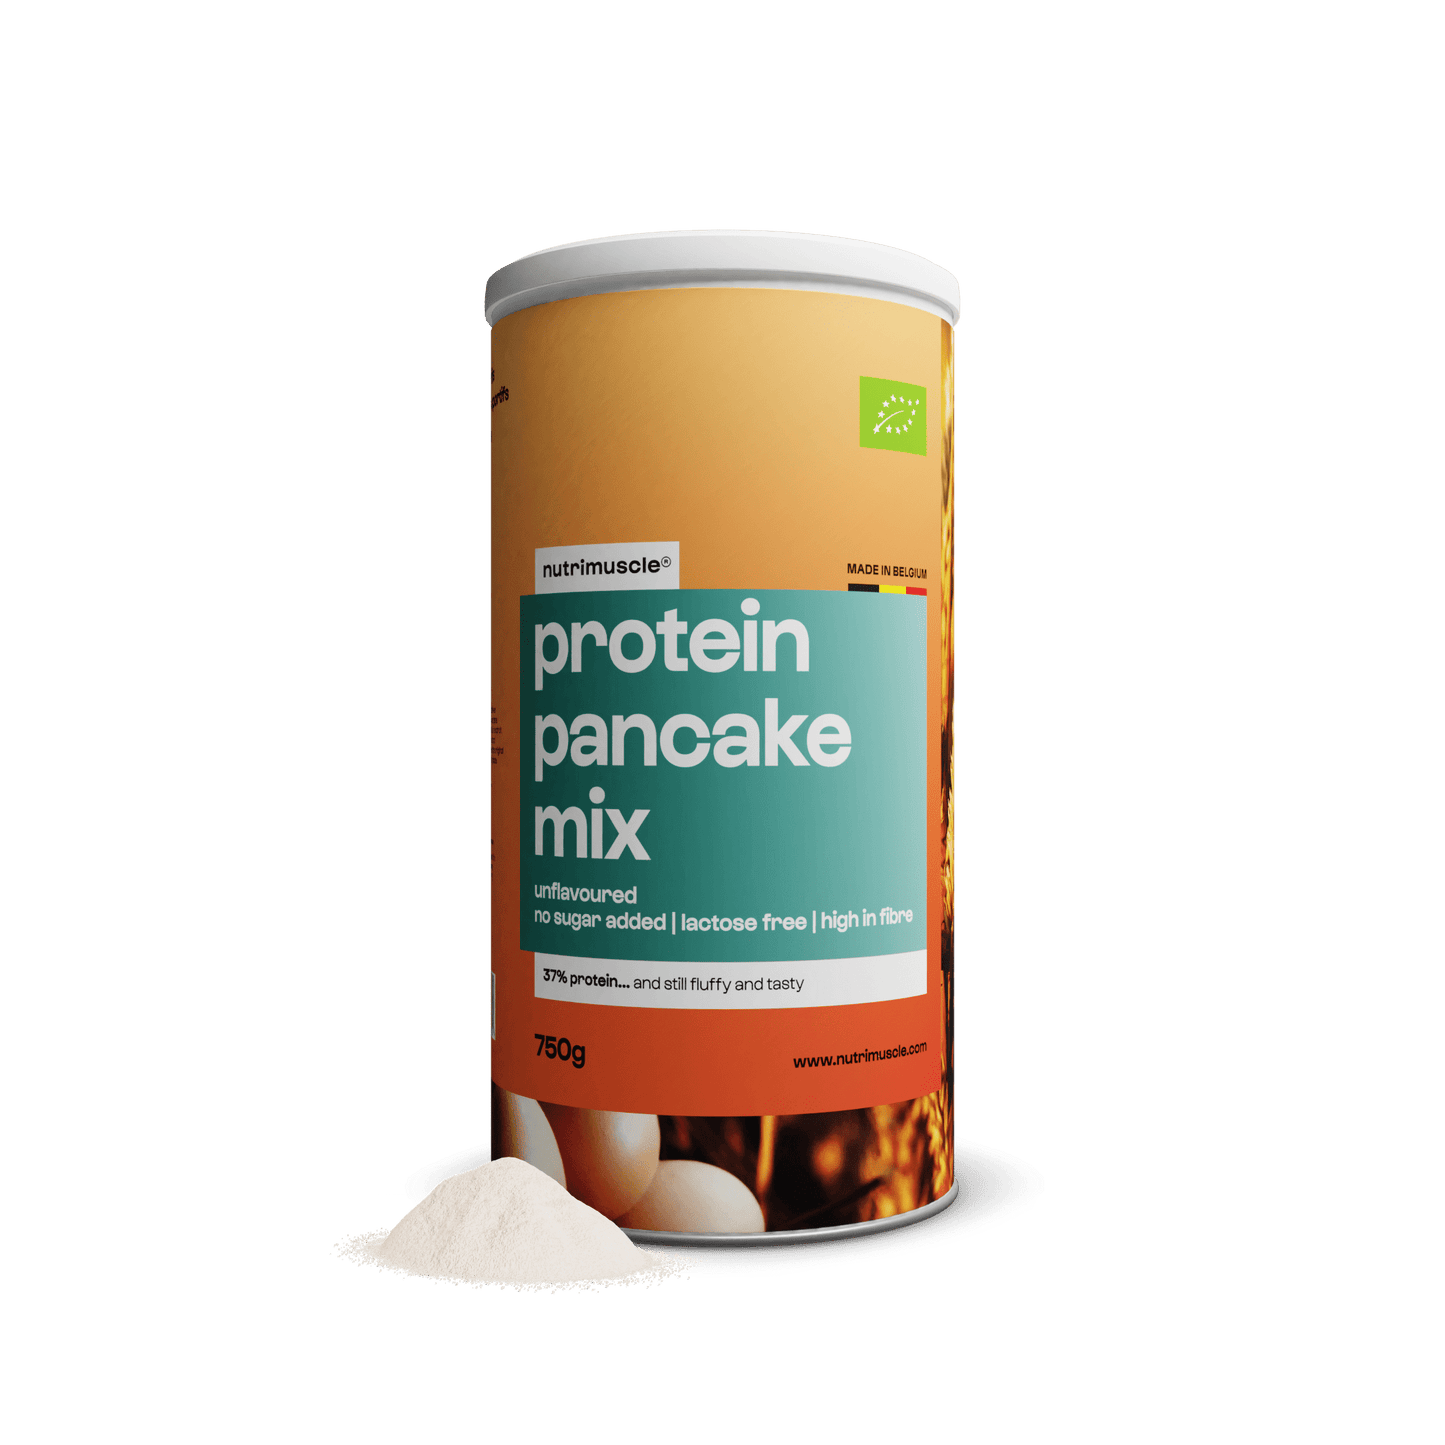 Nutrimuscle Protéines Nature / 750 g Mix pour pancakes protéinés bio